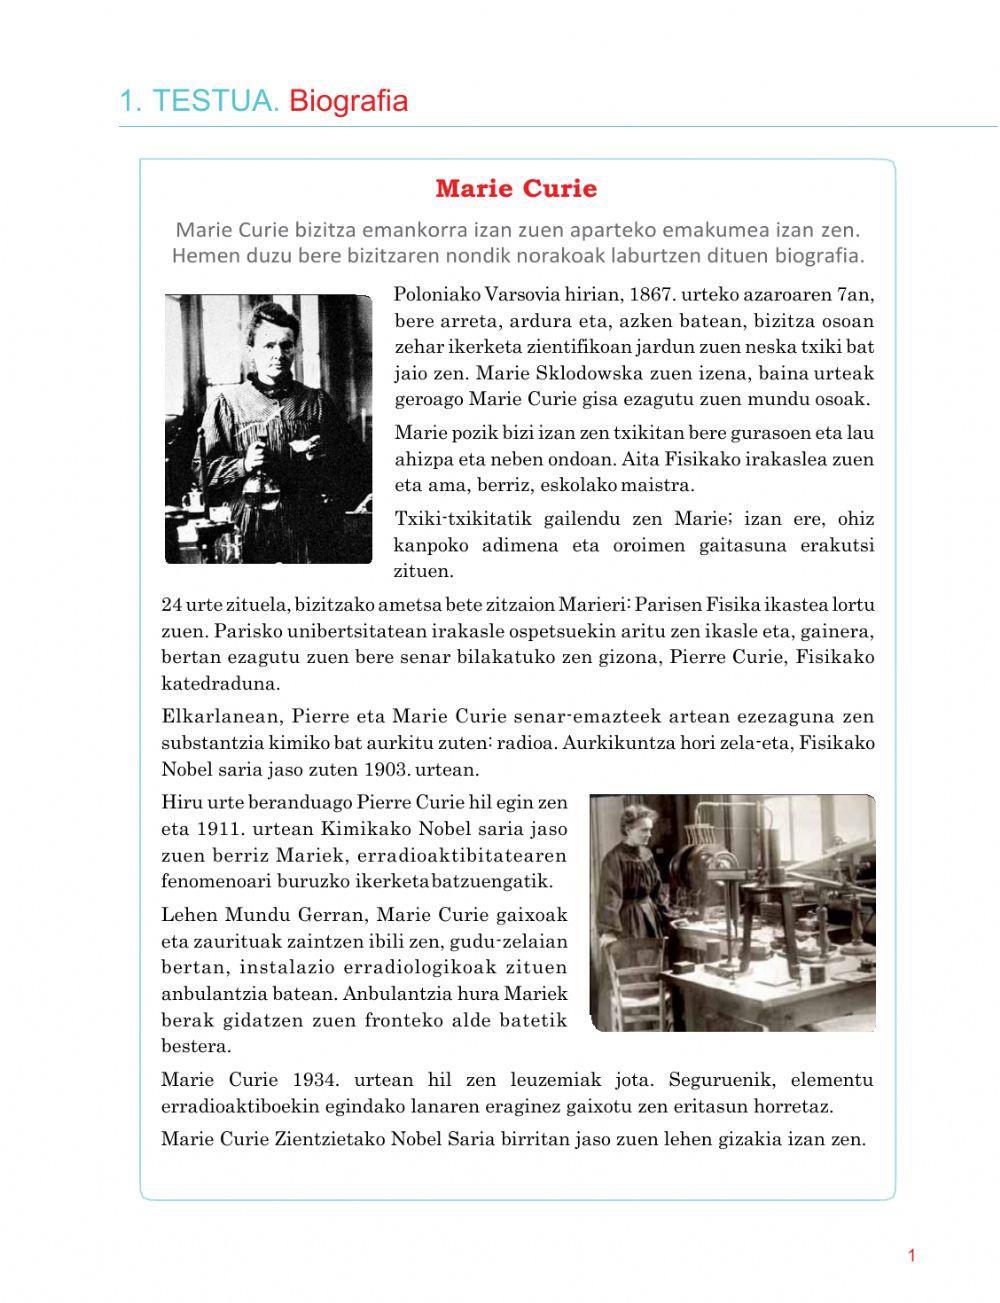 Marie Curie Biografia